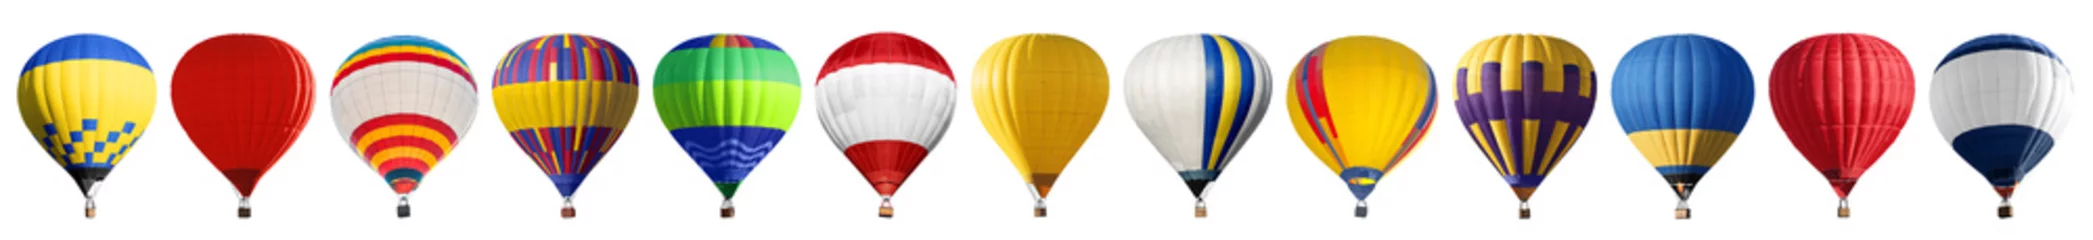 Foto op Aluminium Set van heldere kleurrijke hete lucht ballonnen op witte achtergrond © New Africa